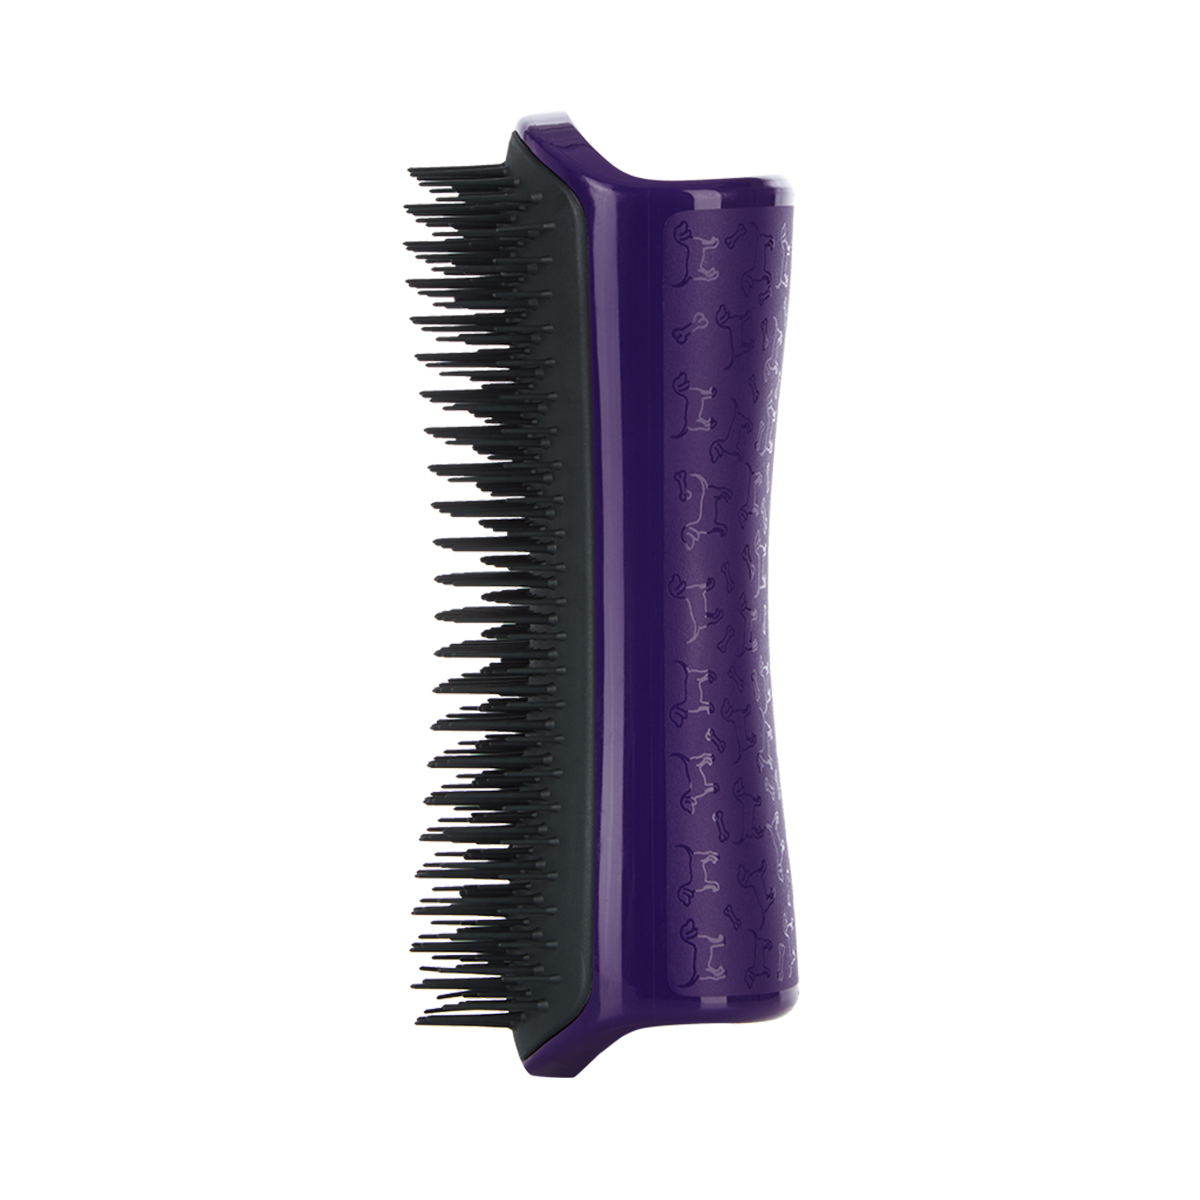 Расческа для вычесывания шерсти Pet Teezer De-shedding & Dog Grooming Brush Purple & Grey